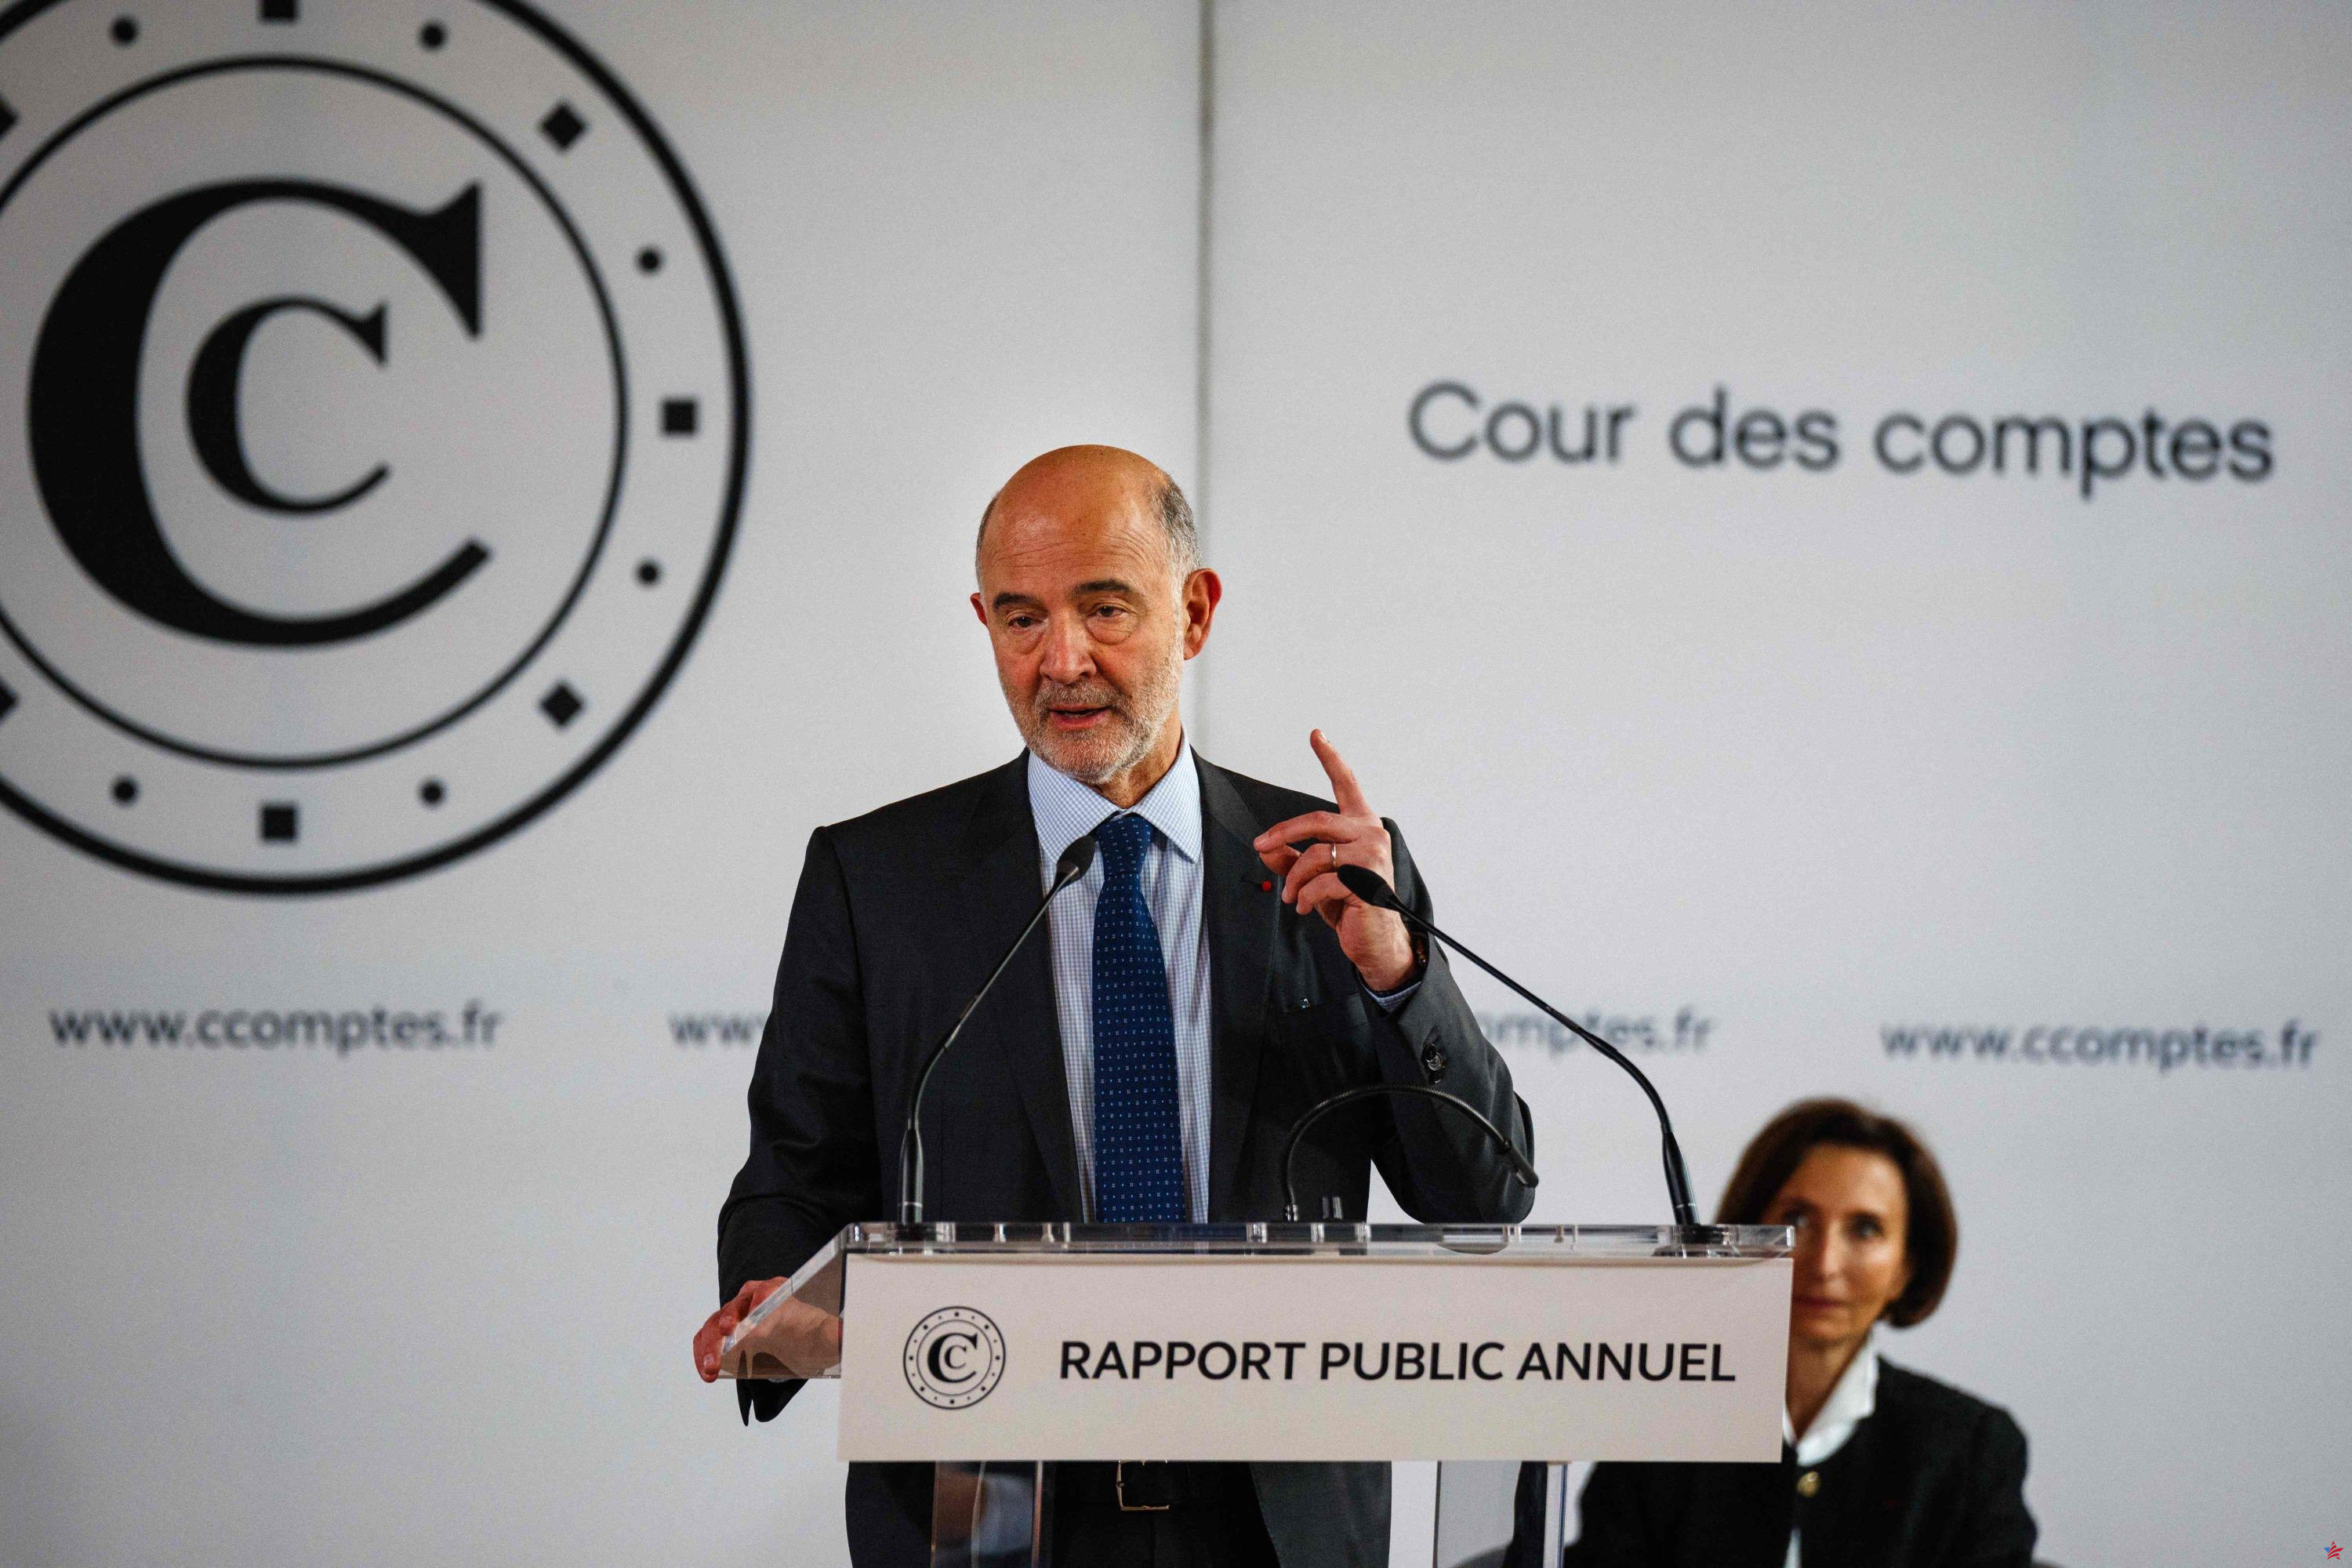 Deuda: el gasto energético pone a Francia "contra la pared", advierte Pierre Moscovici